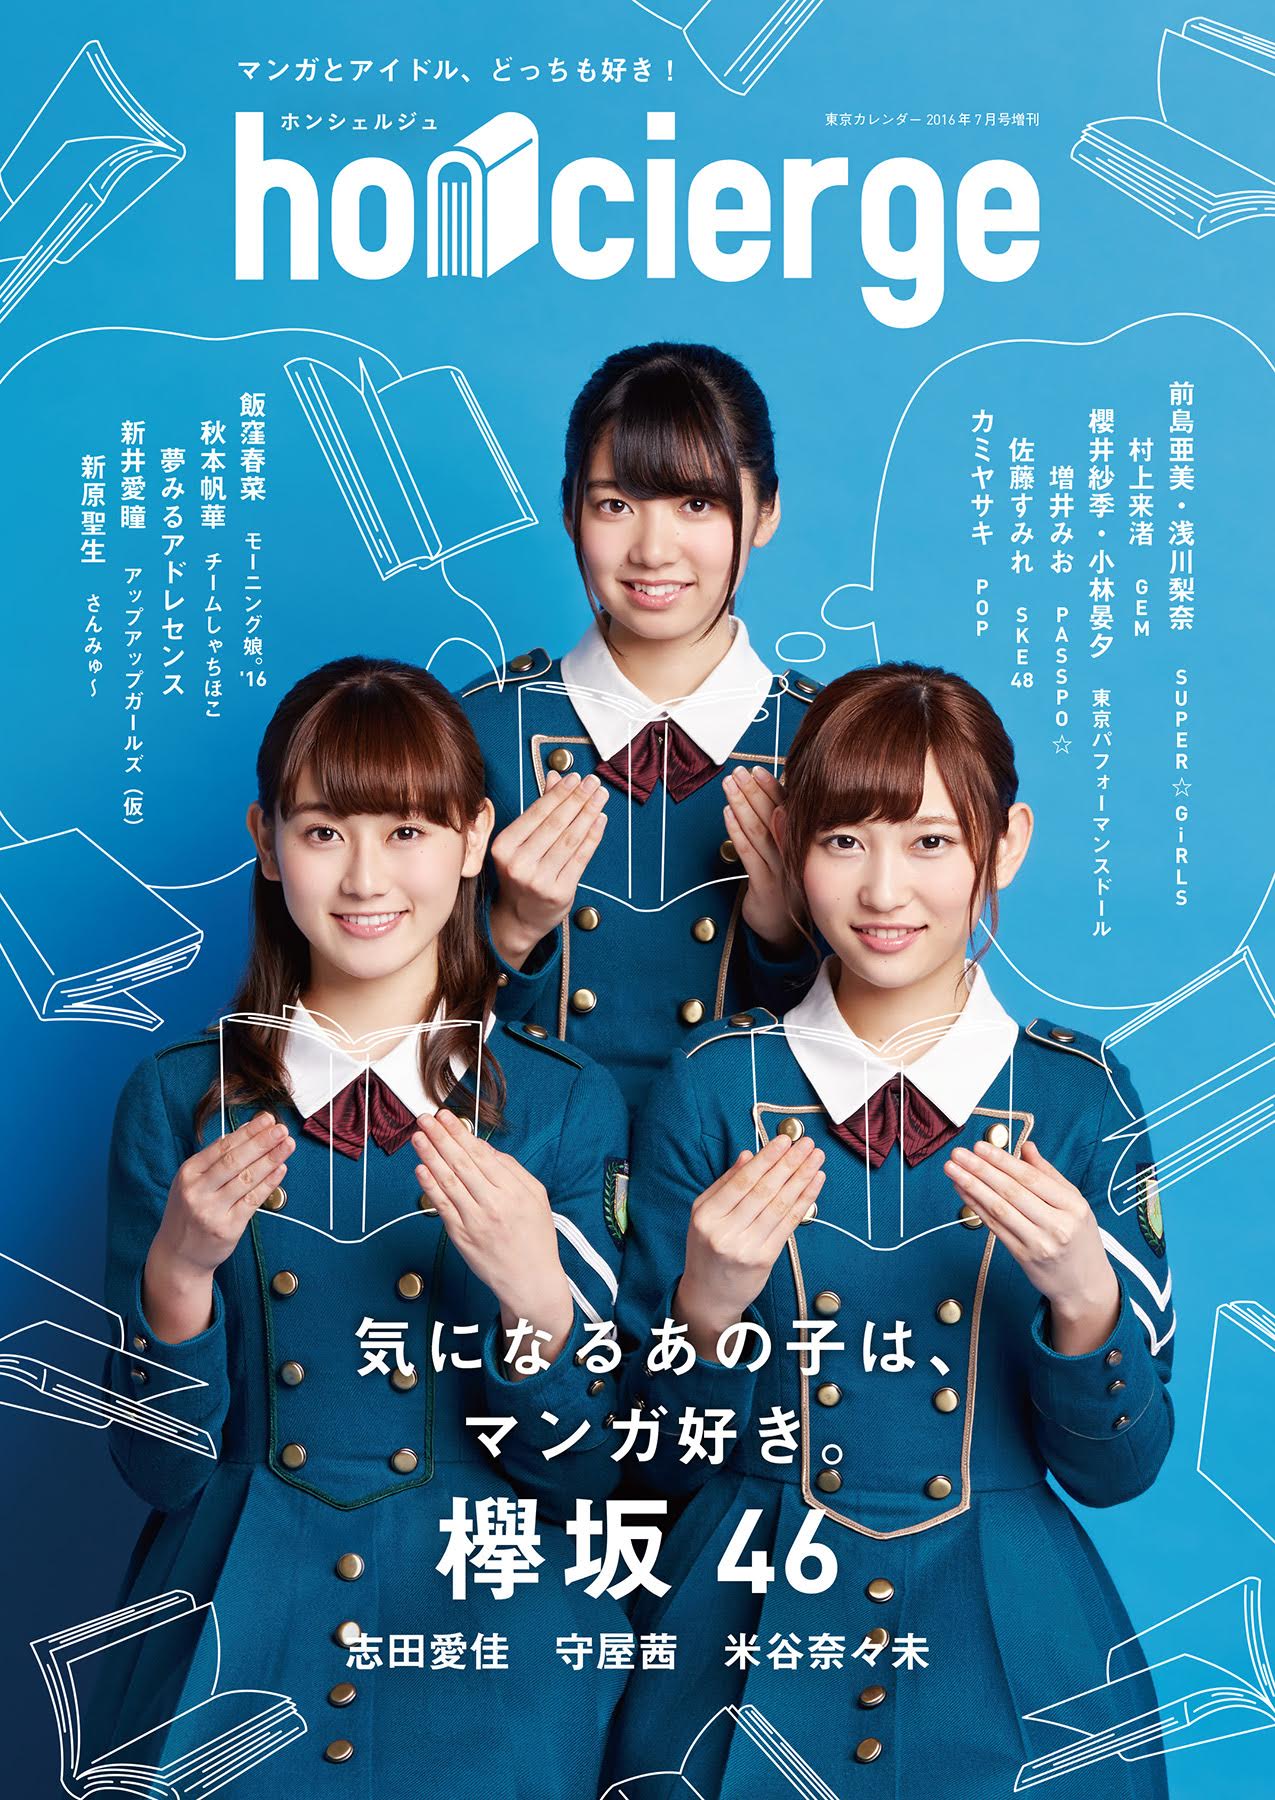 欅坂46のマンガ好きメンバー3名が初表紙巻頭記事 37名のアイドルがマンガ をキュレーションする雑誌 Honcierge ホンシェルジュ 株式会社リグネのプレスリリース